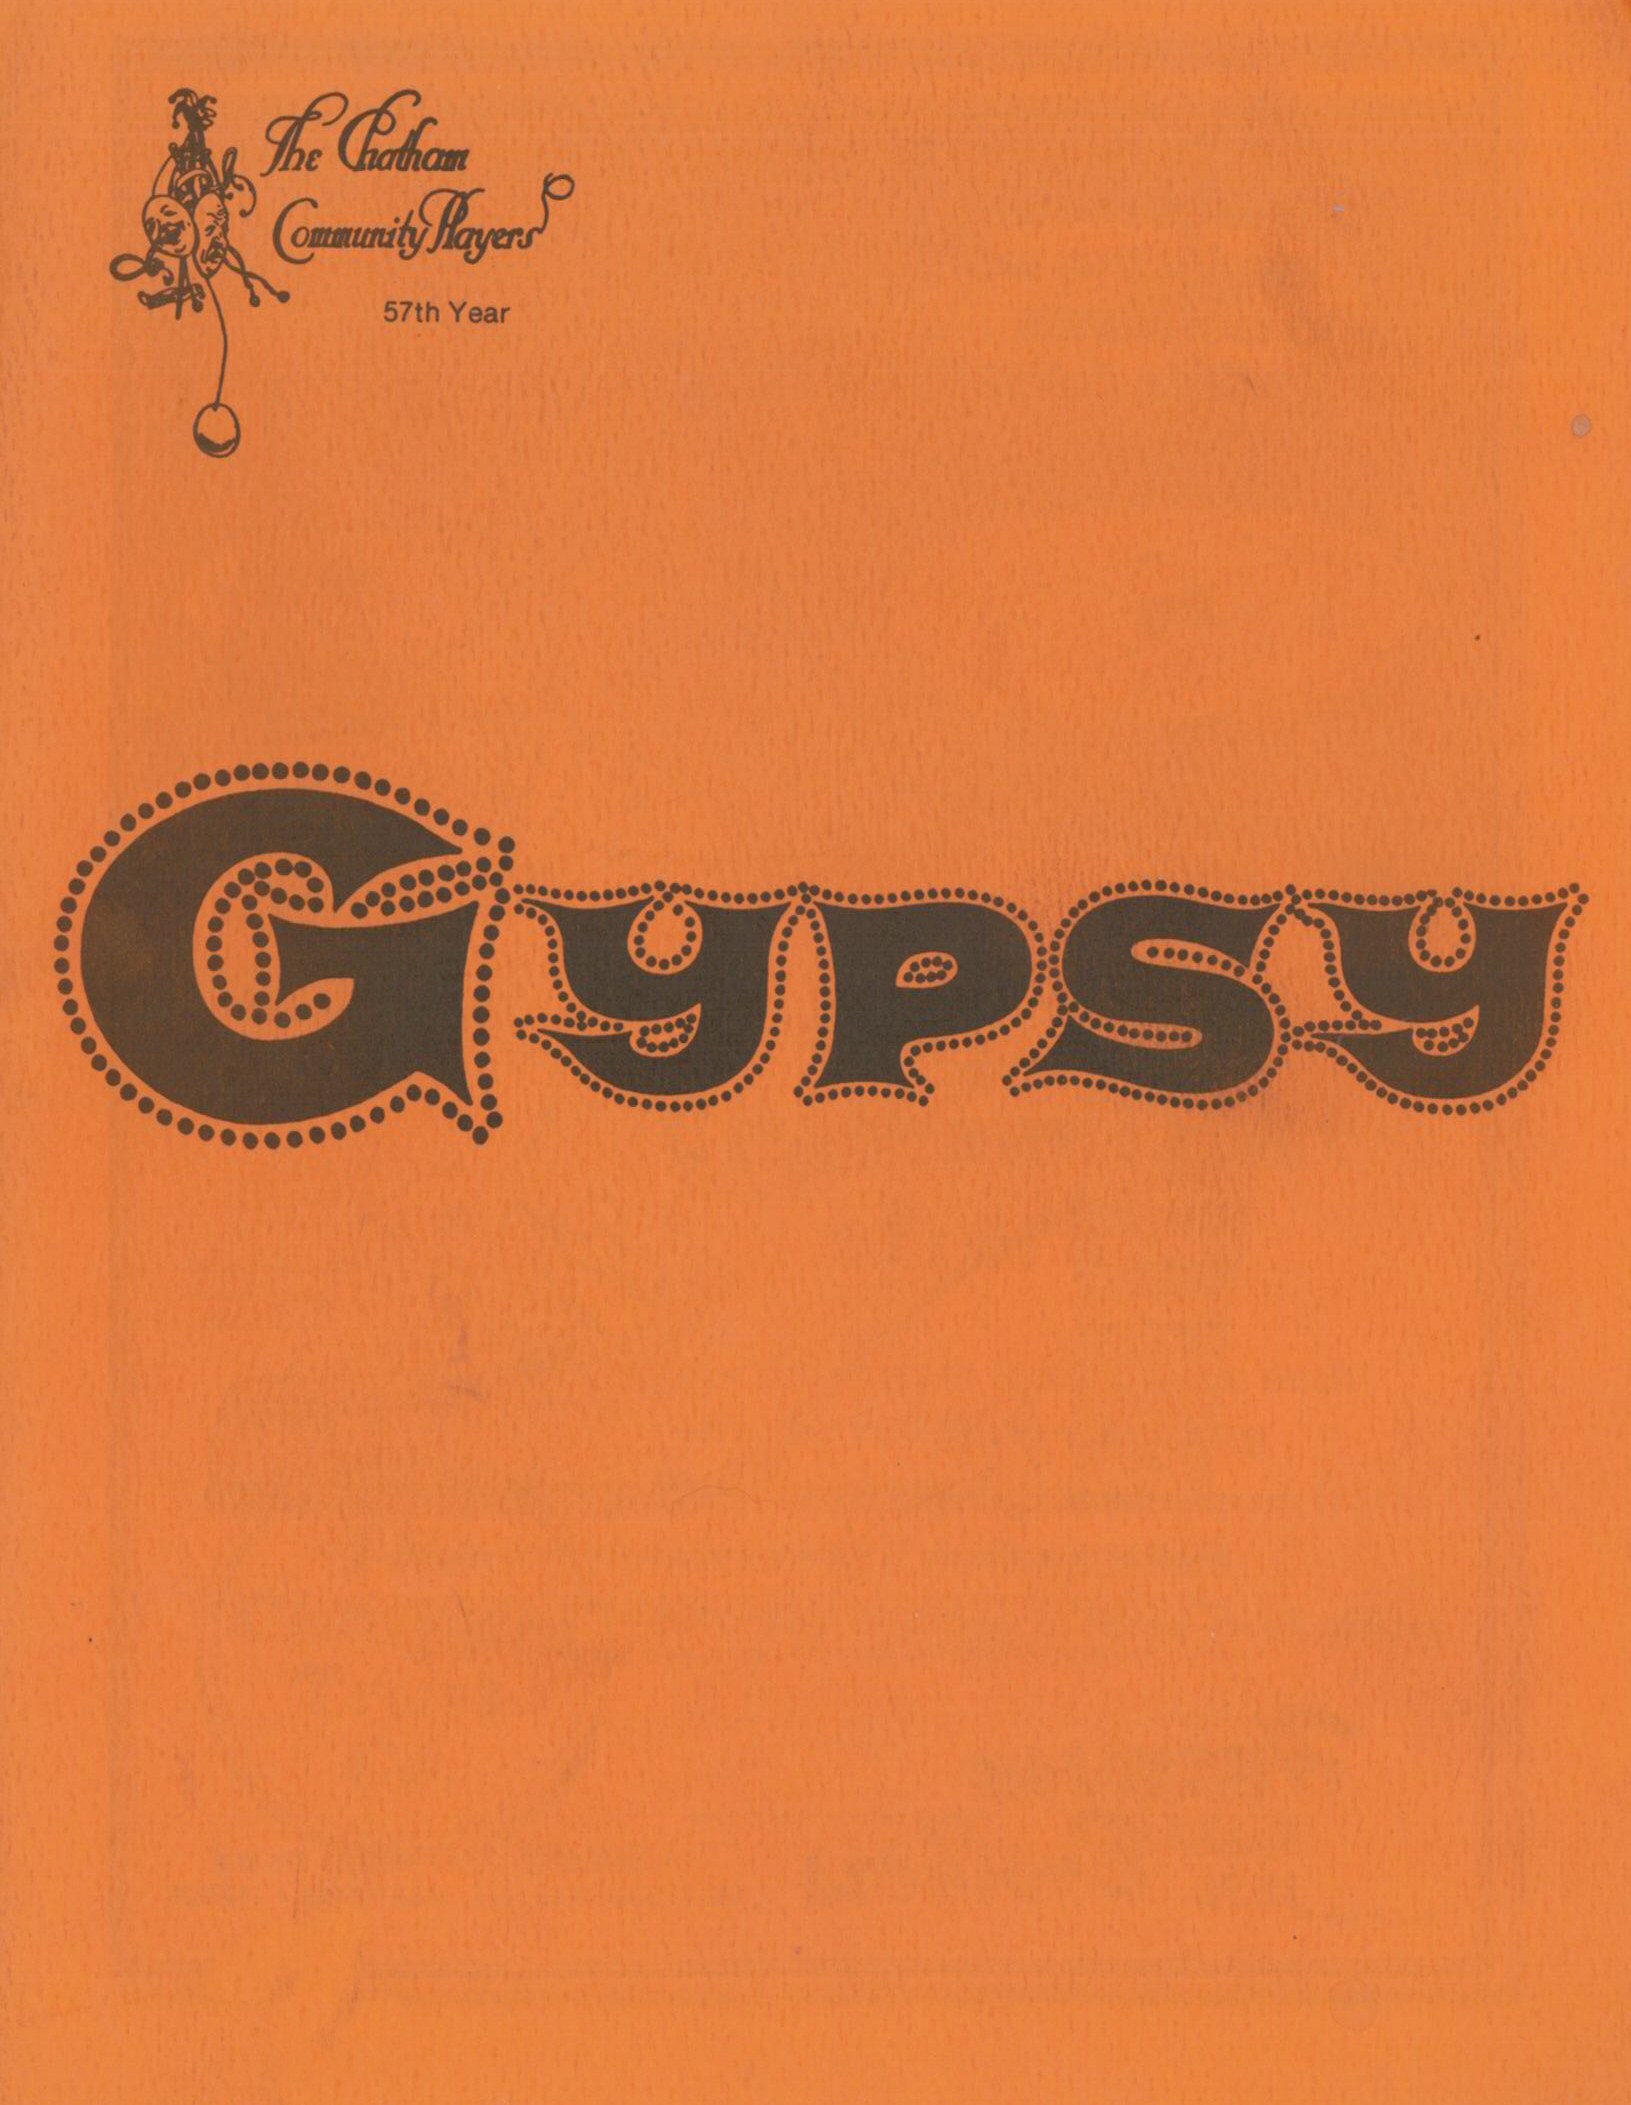 Gypsy (1978)